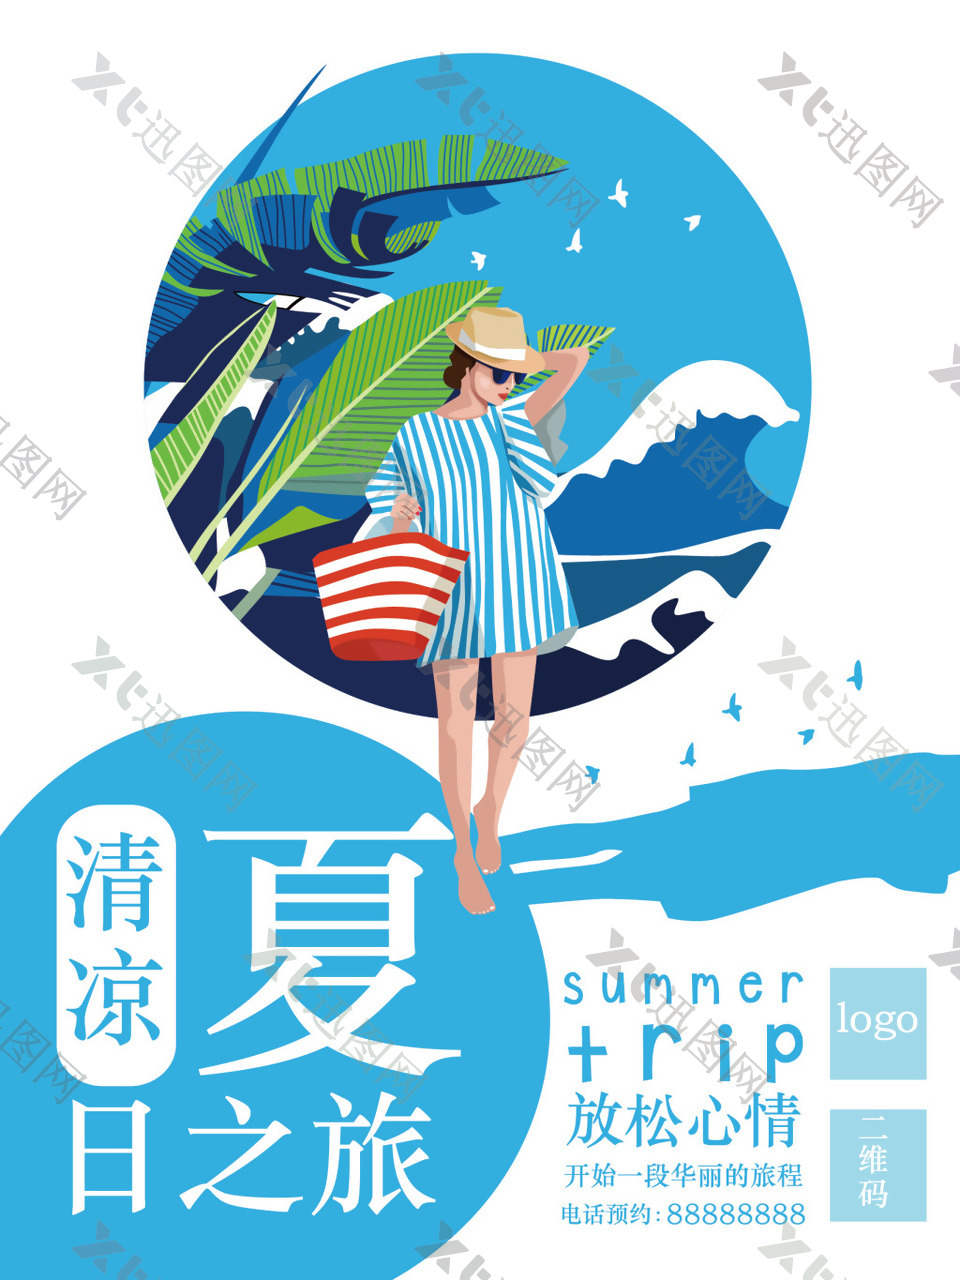 夏日之旅旅游促销宣传海报